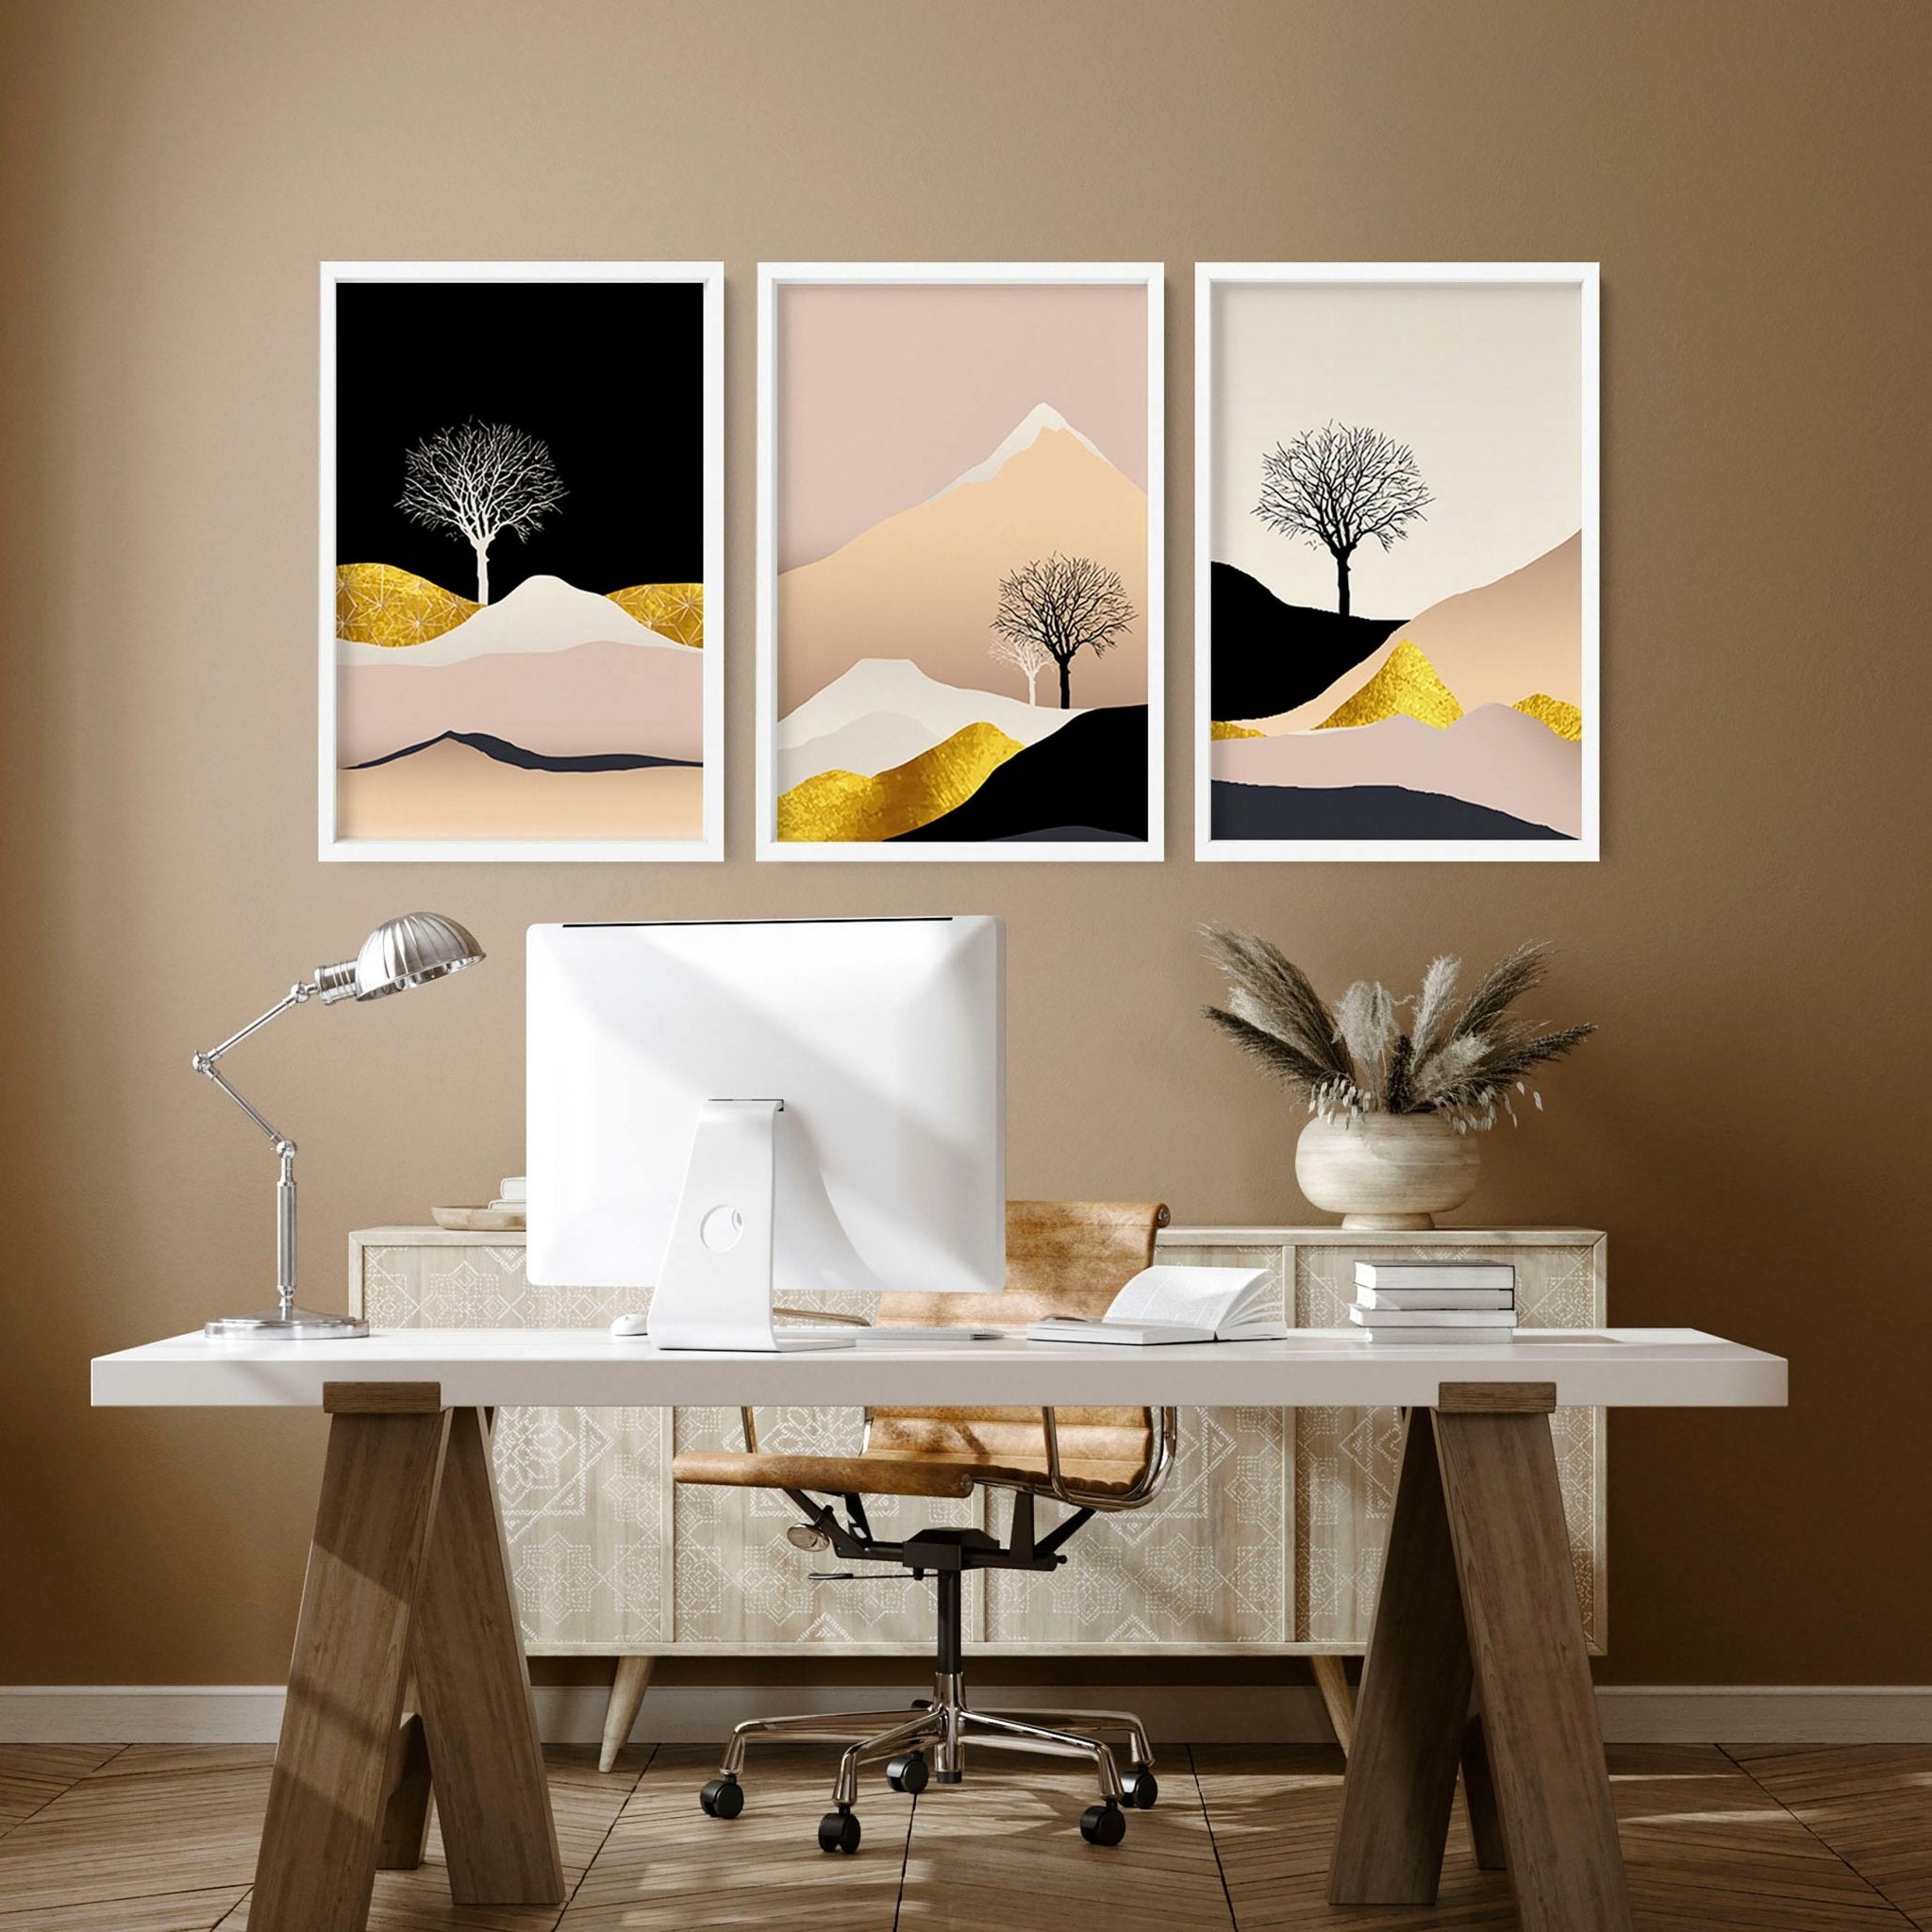 Juego de pintura de paisaje nórdico de 3 impresiones de arte de pared enmarcadas que calman el escritorio de la oficina en casa Decoración para hombres y mujeres, arte de pared de galería escandinava dorada